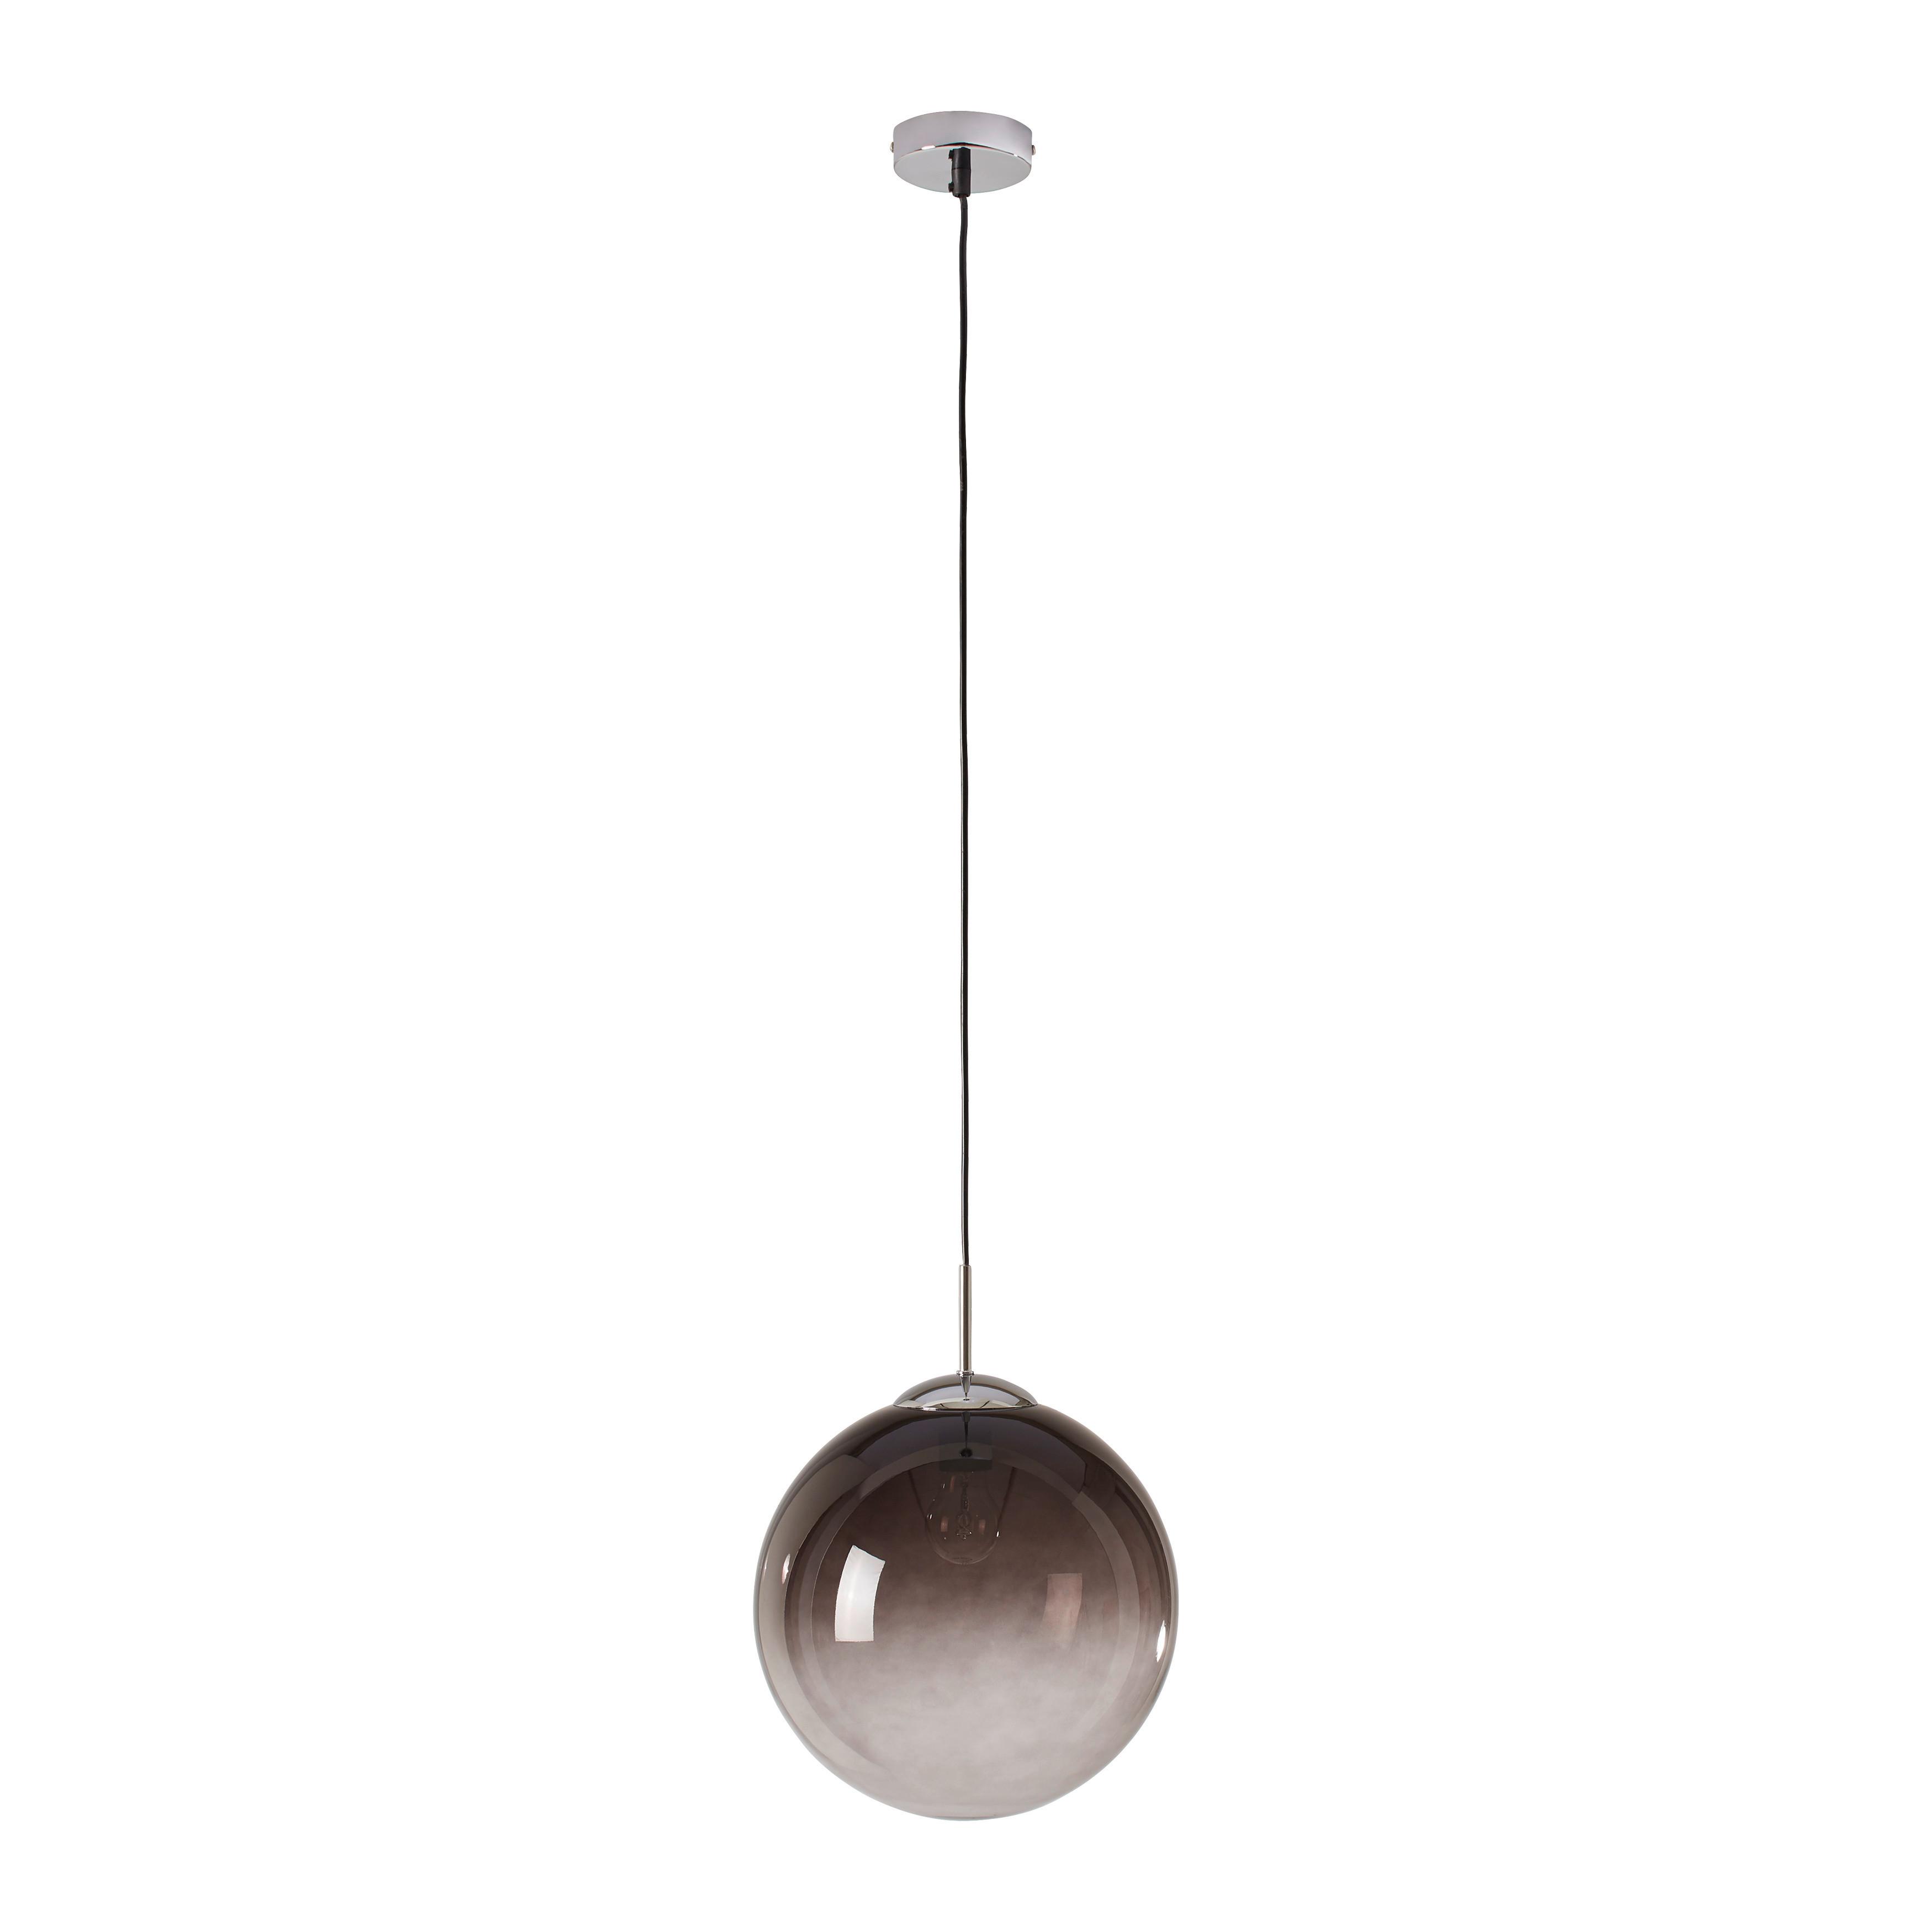 Závesná Lampa Lus 30/120cm, 40 Watt - čierna/chrómová, Štýlový, kov/plast (30cm) - Modern Living